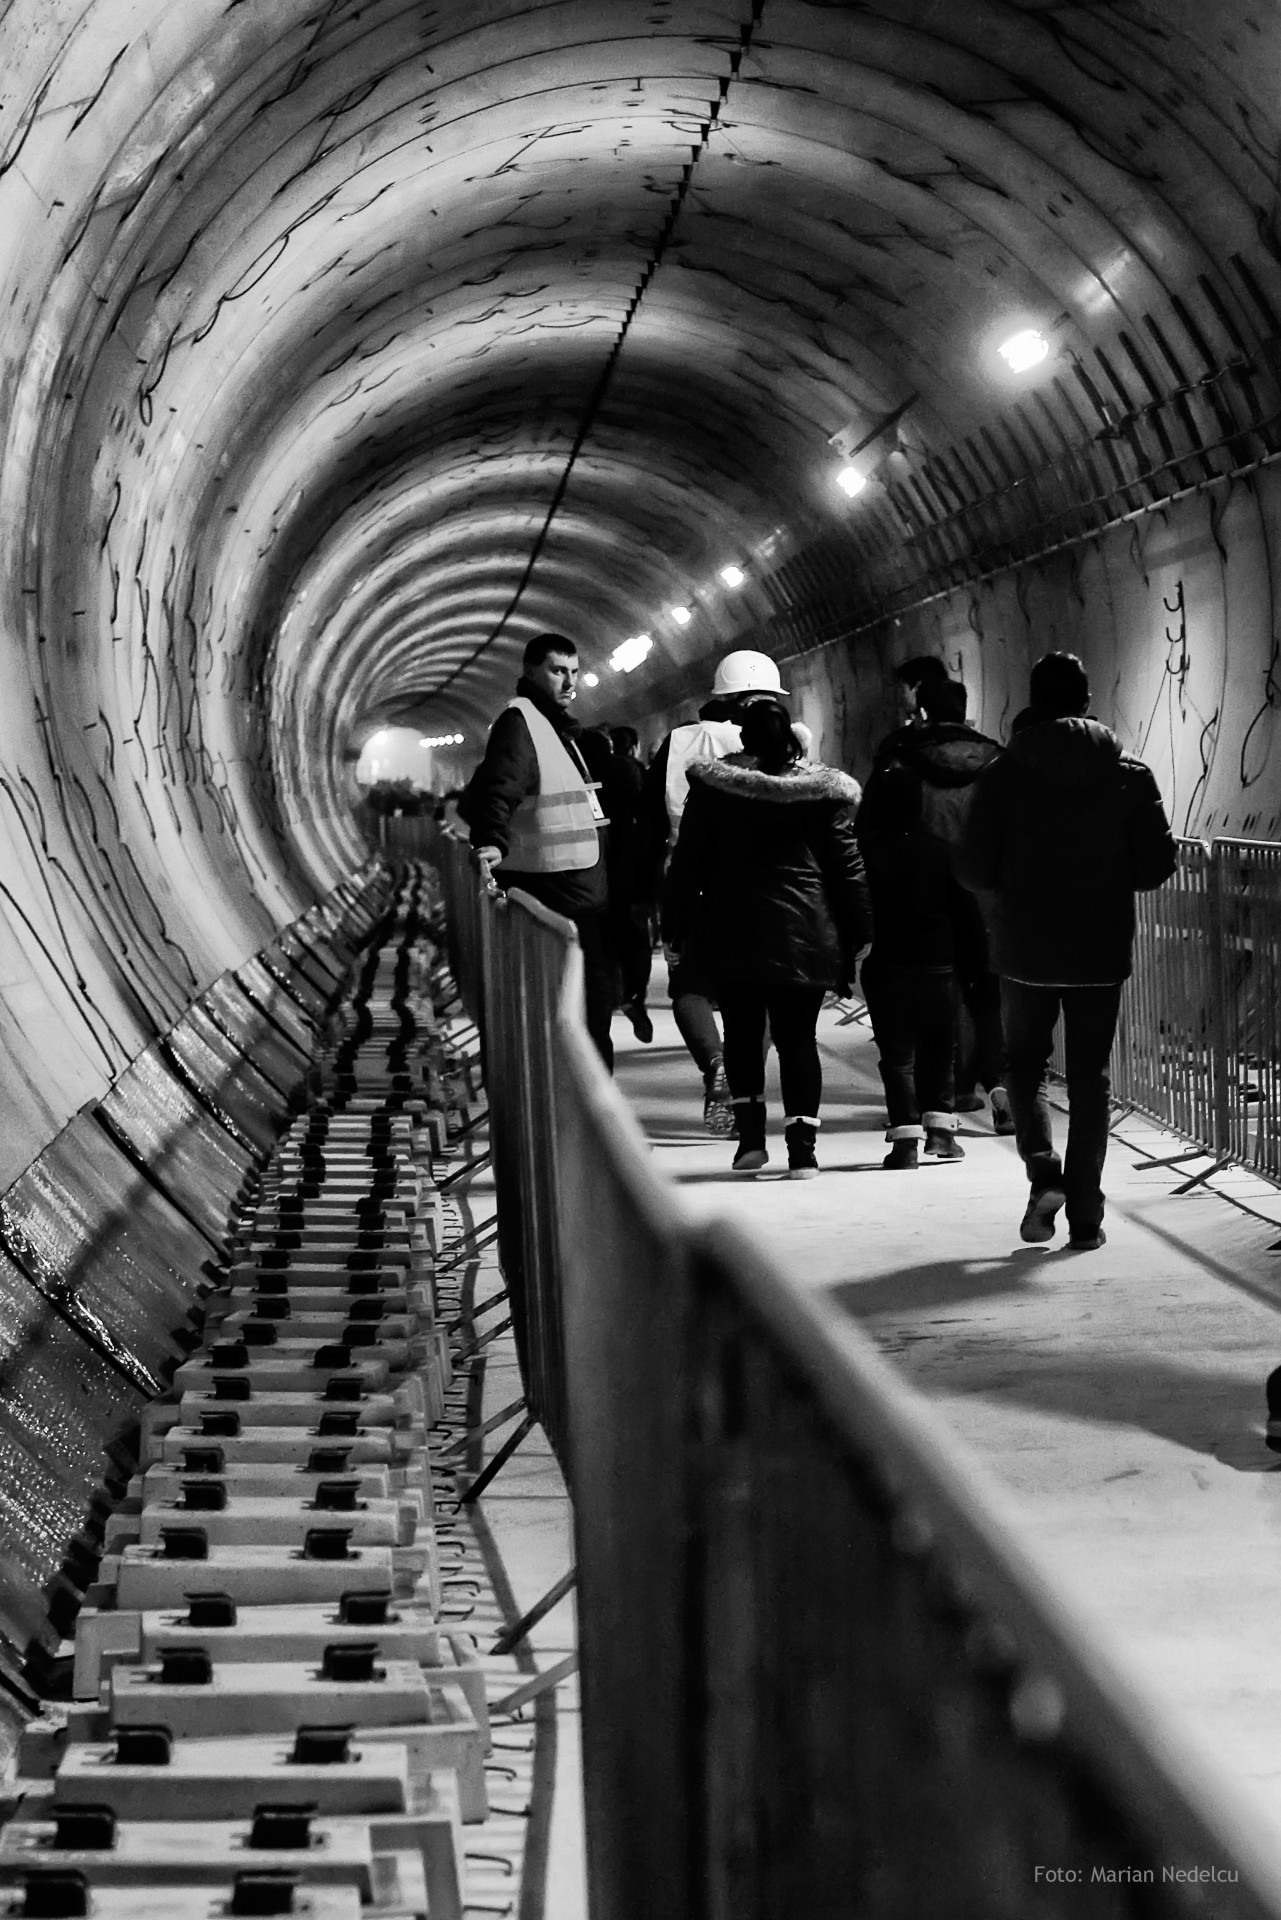 In tunelul metroului din Statia Favorit ( Drumul Taberei )